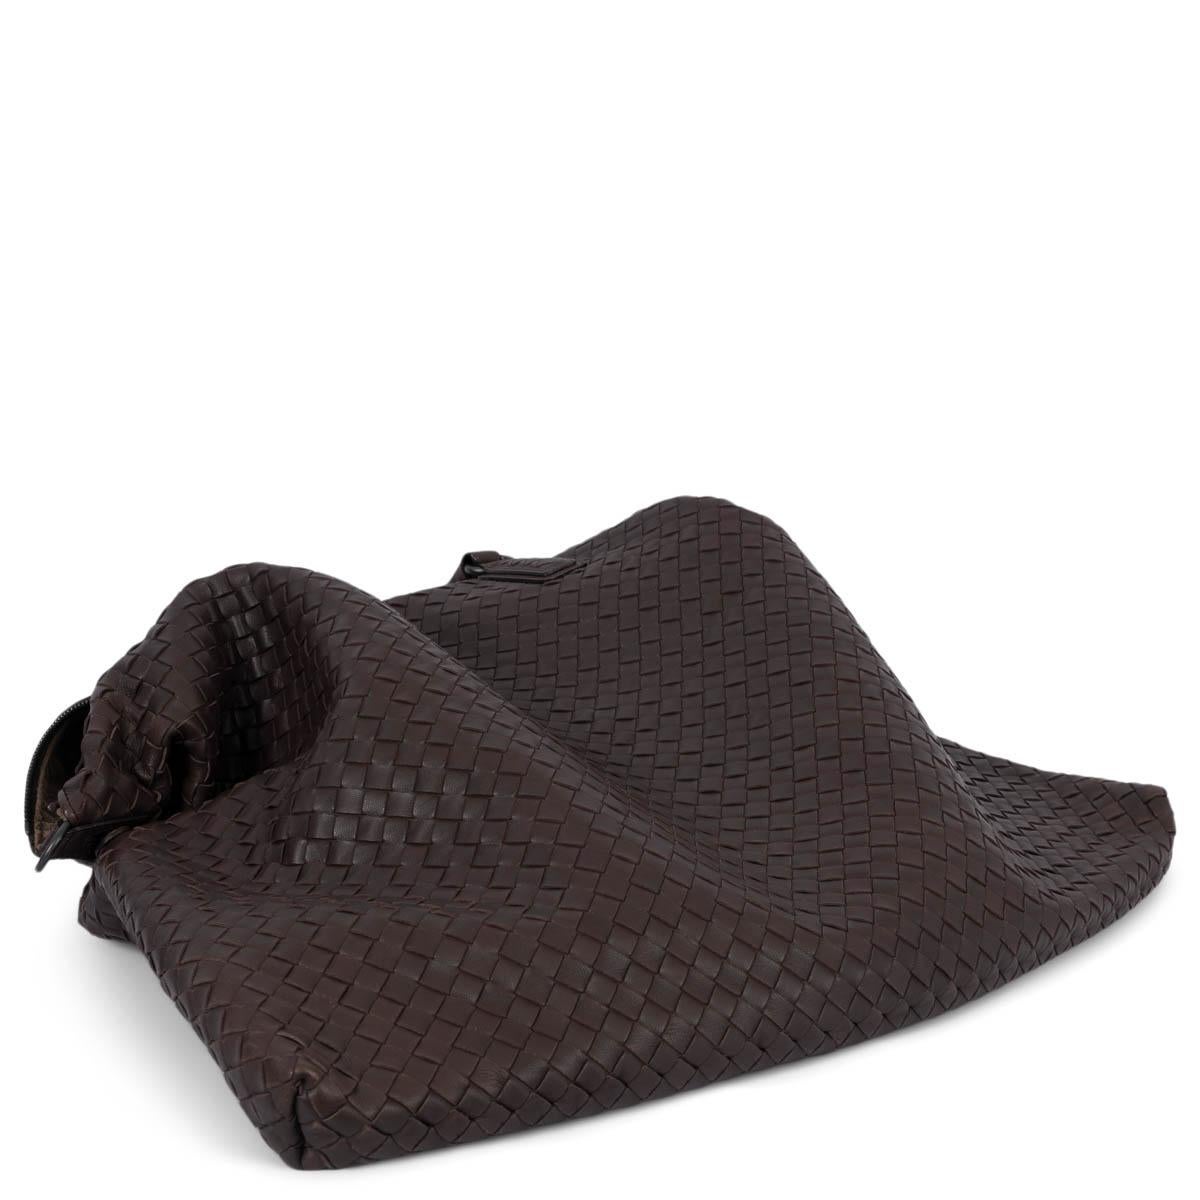 BOTTEGA VENETA Ebano brown leather INTRECCIATO MAXI CONVERTIBLE TOTE Bag For Sale 2